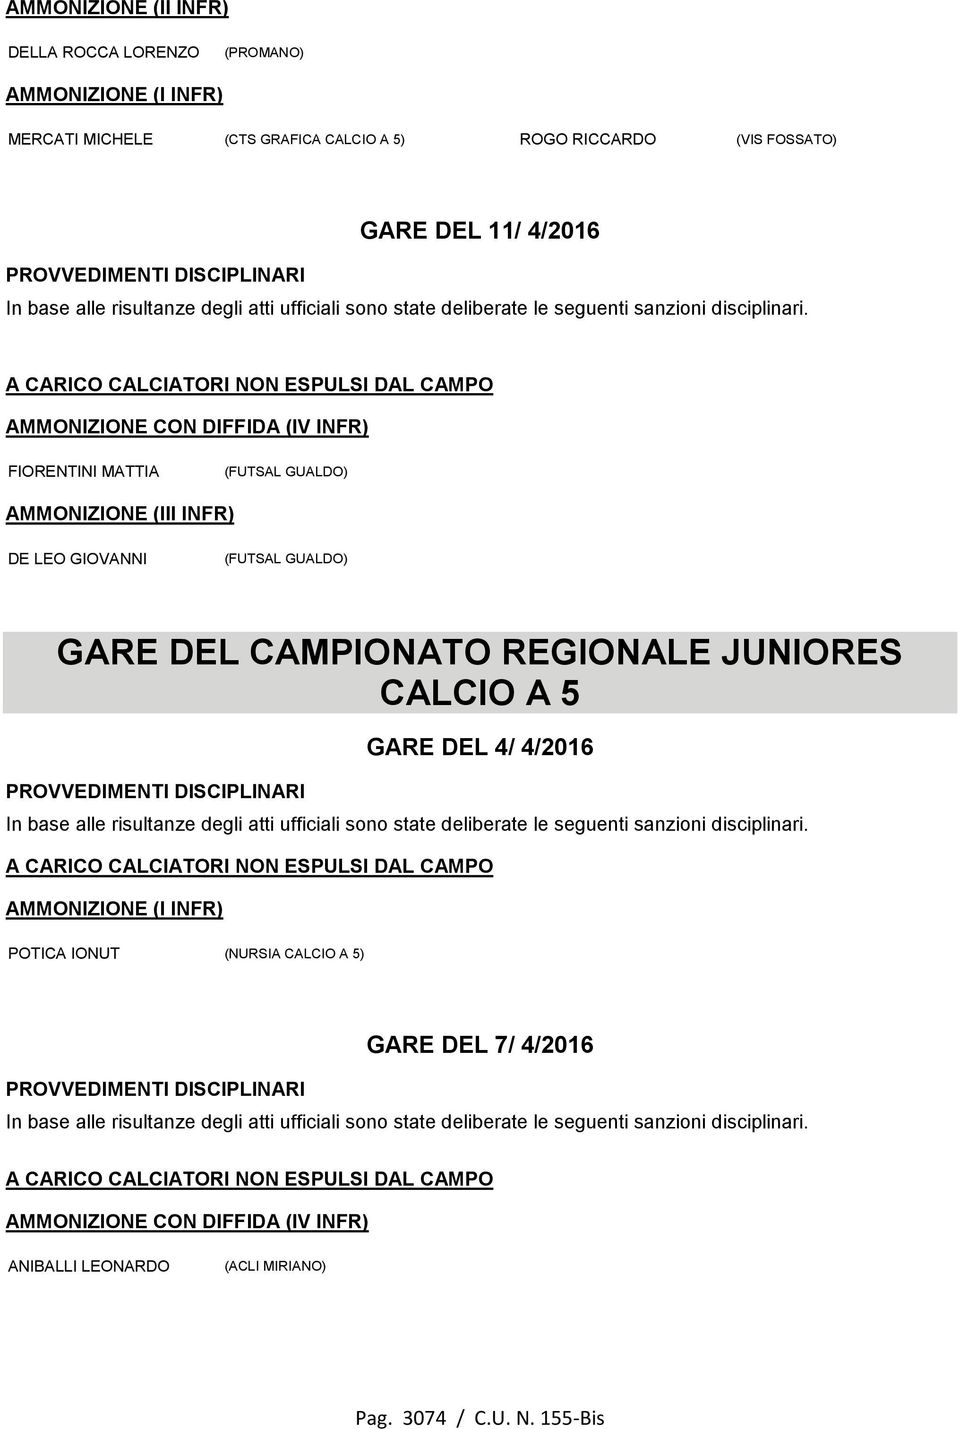 LEO GIOVANNI (FUTSAL GUALDO) GARE DEL CAMPIONATO REGIONALE JUNIORES CALCIO A 5 GARE DEL 4/ 4/2016 AMMONIZIONE (I INFR) POTICA